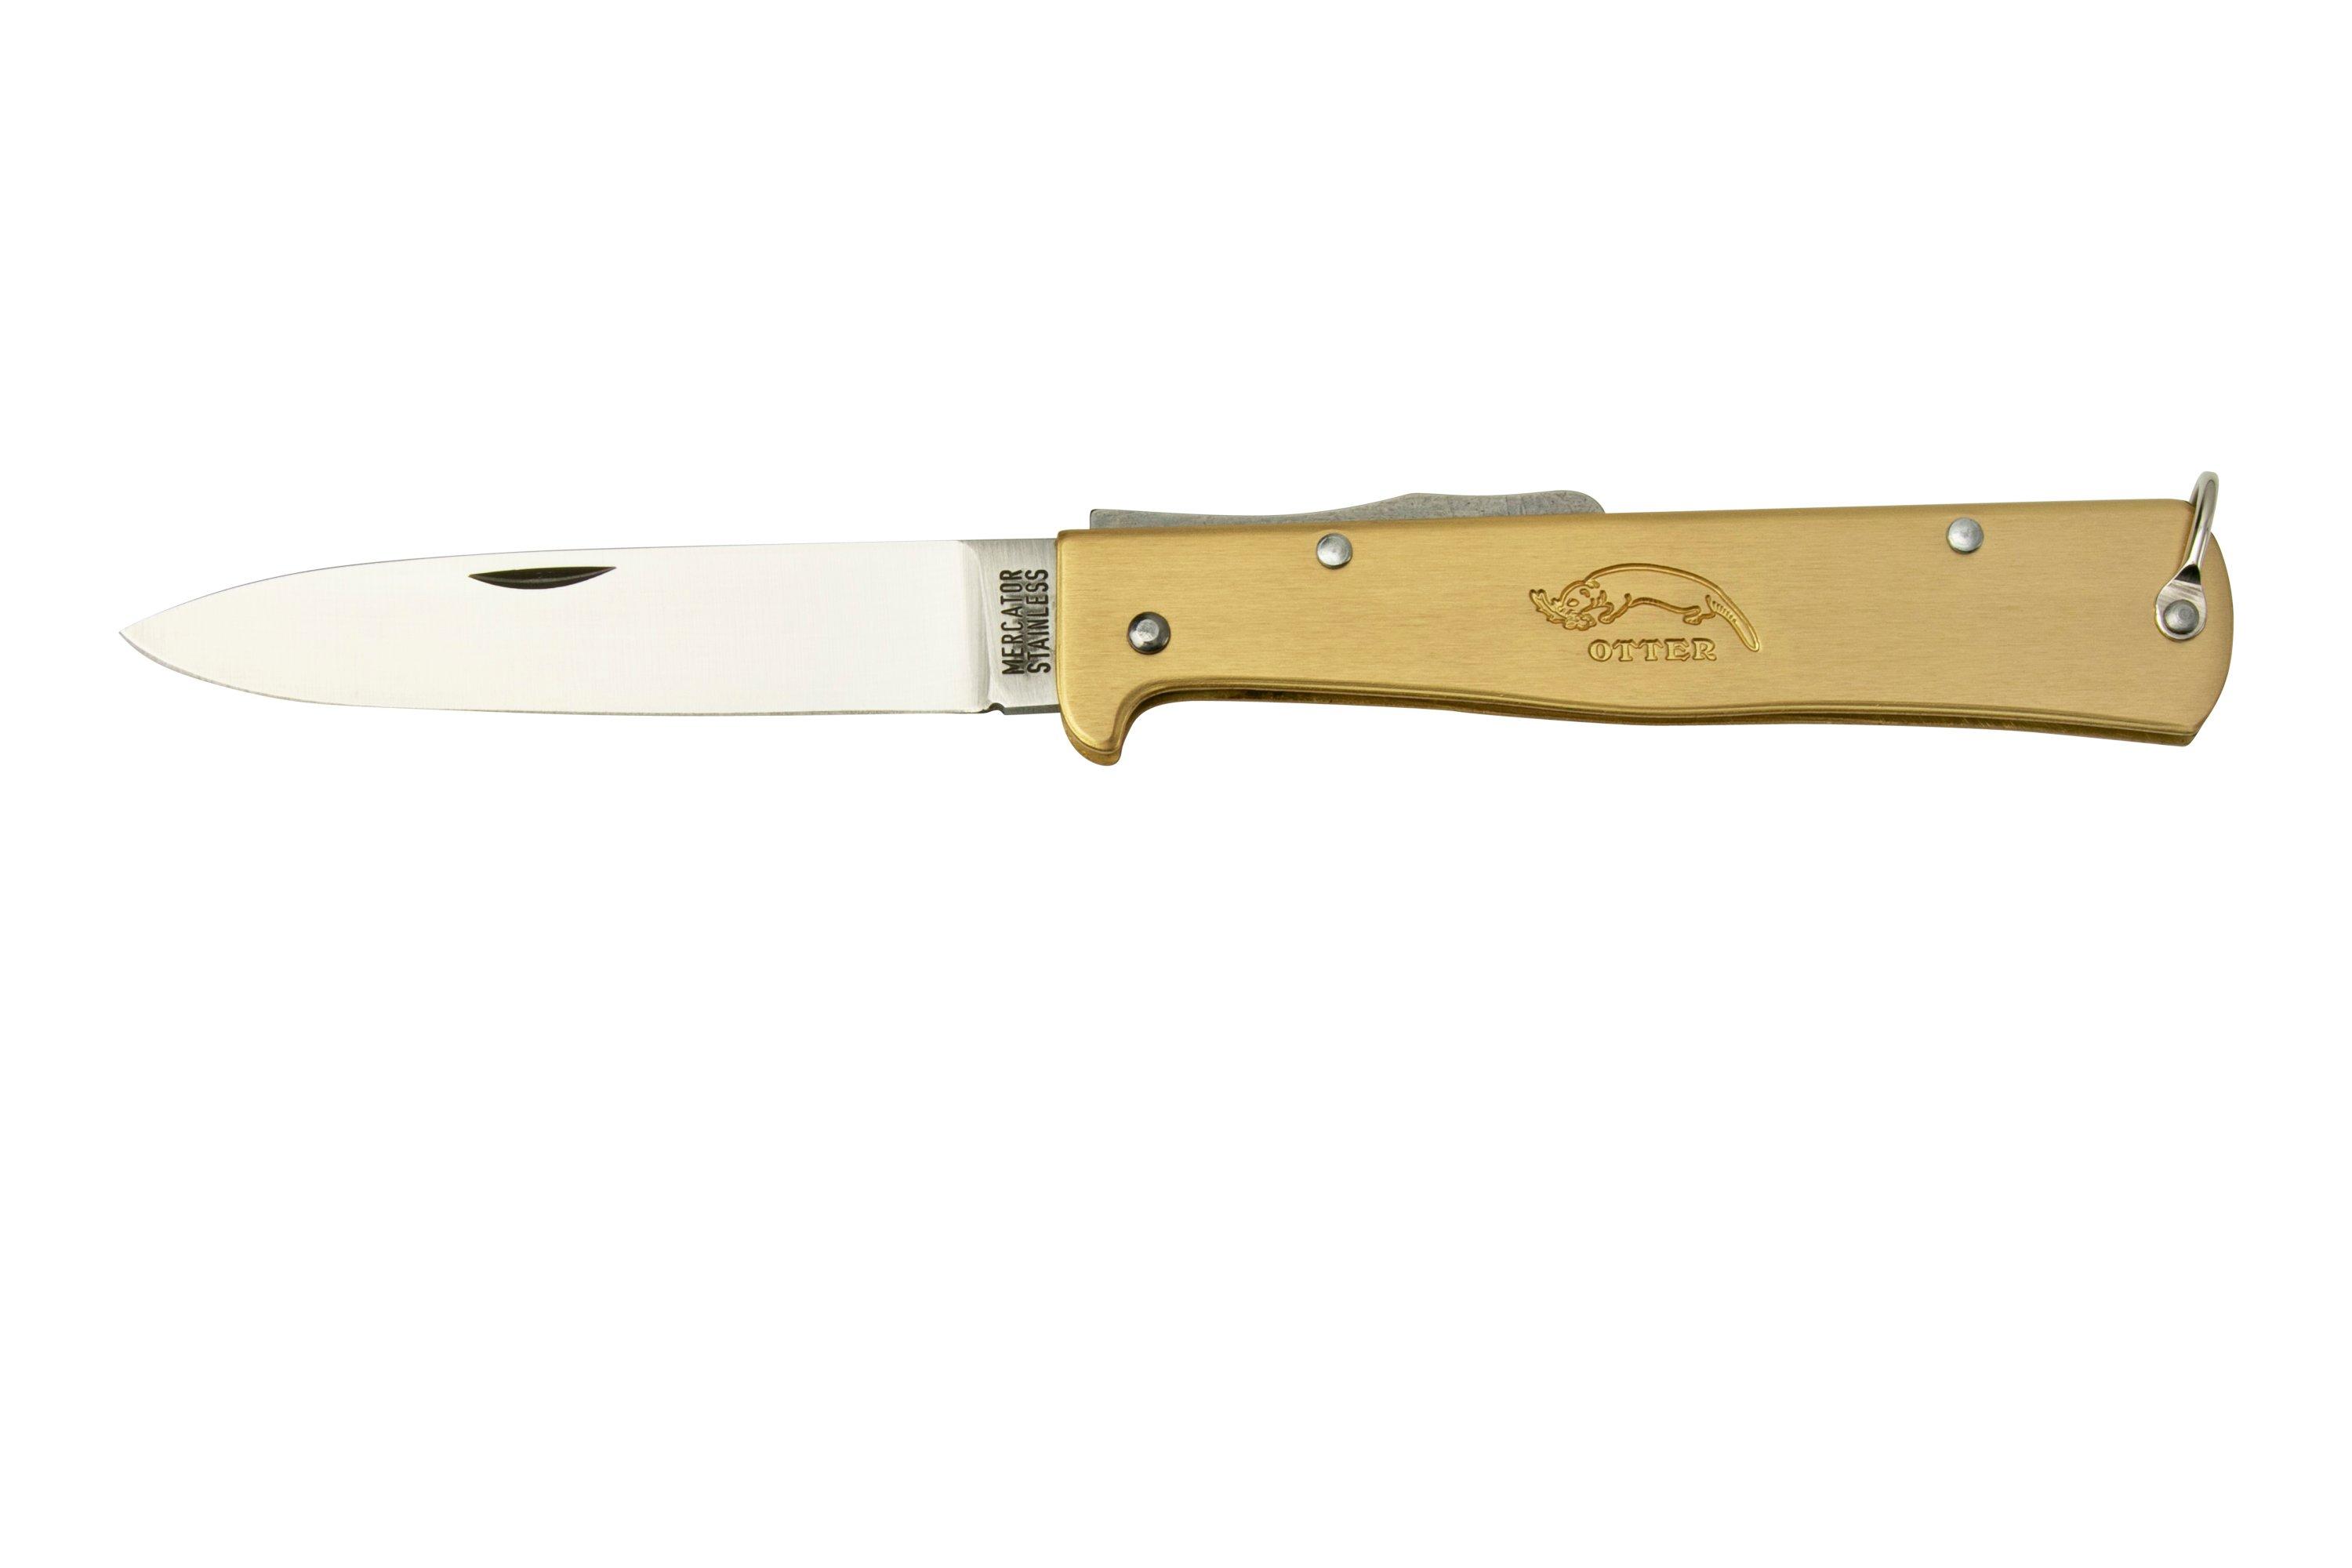 Mercator Pocket Knife, Stainless Steel, Western folding knives